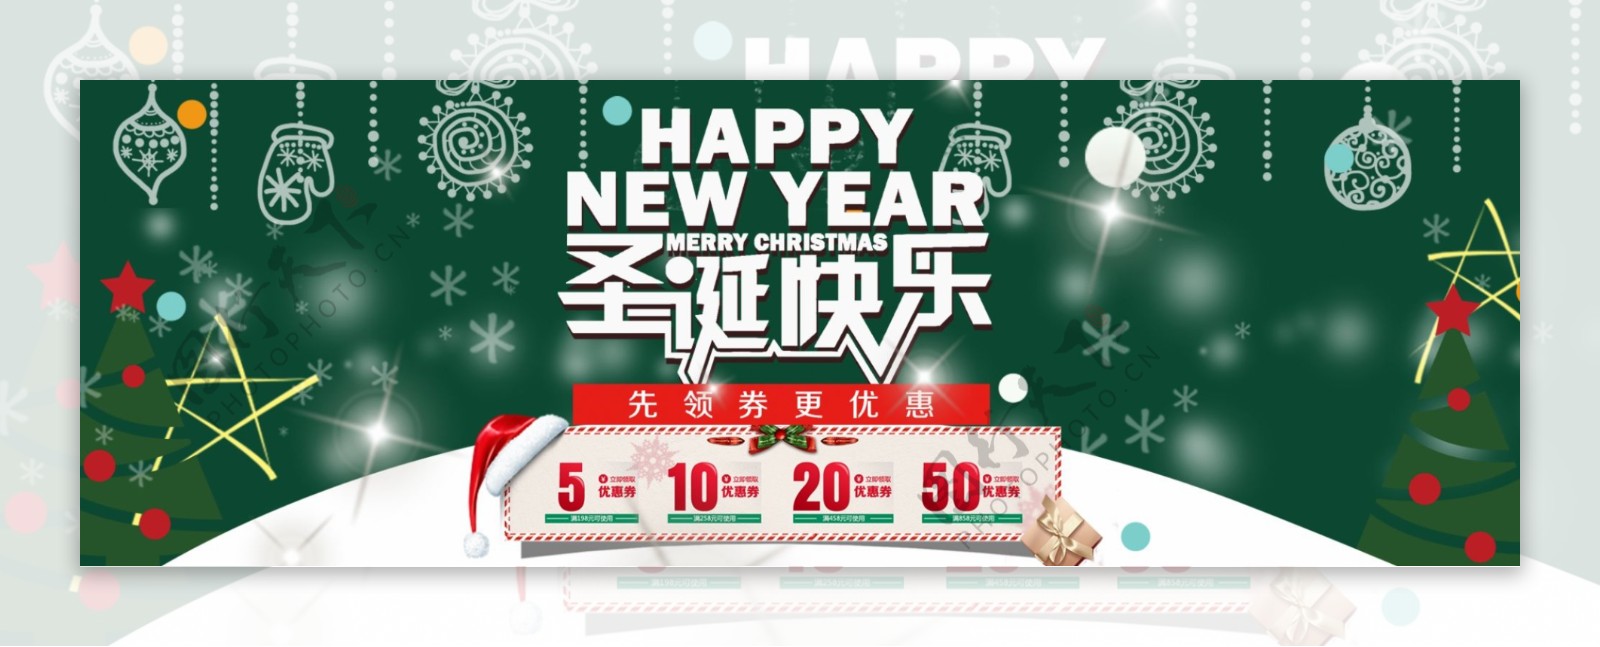 简约喜庆风格电商淘宝圣诞节日活动促销海报